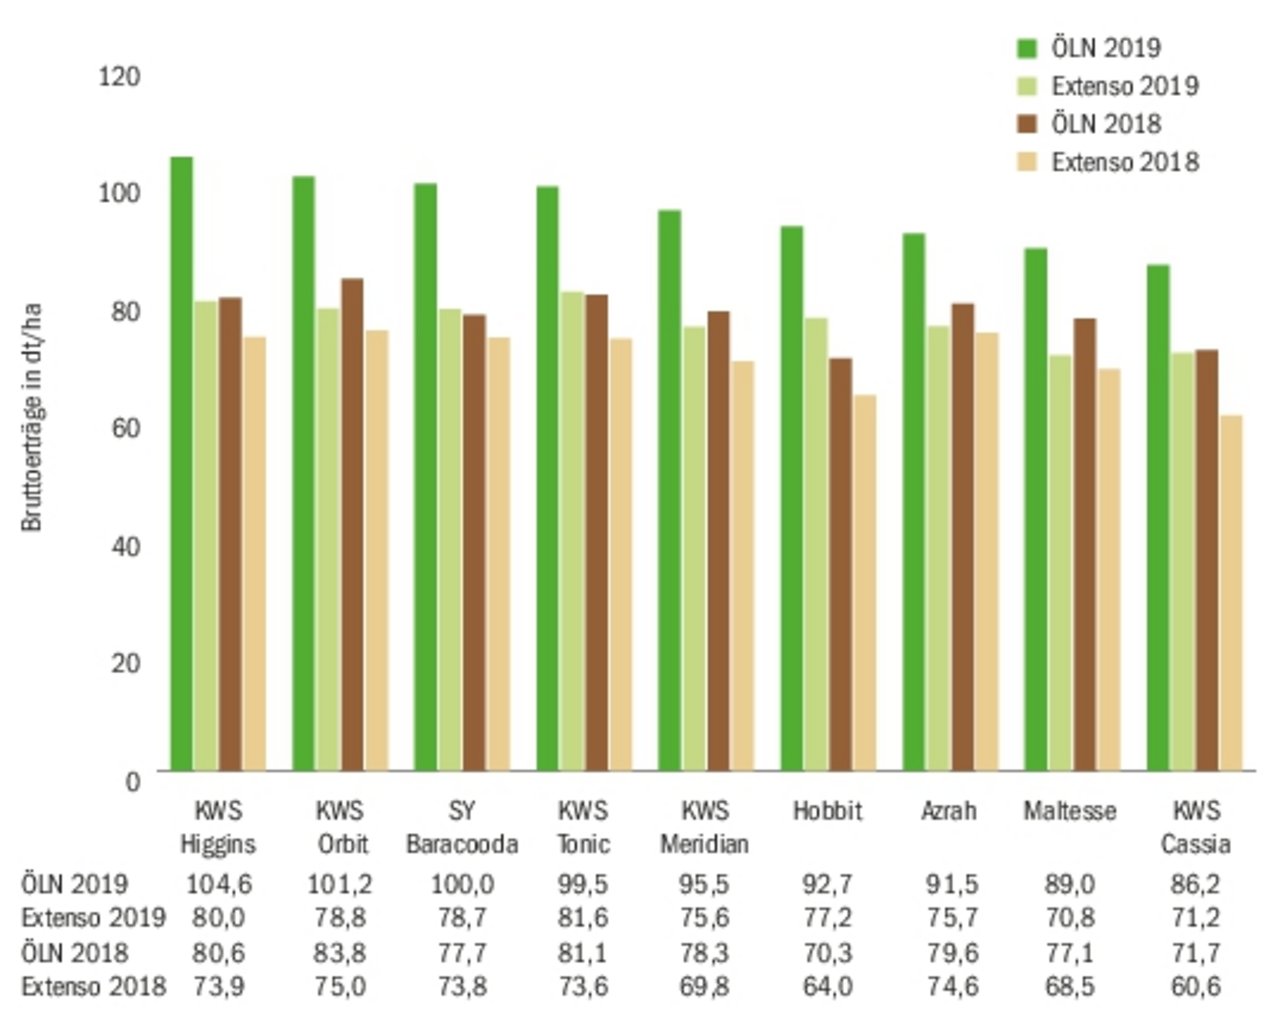 Bruttoertrag der getesteten Sorten (ÖLN und Extenso) im Jahr 2018 und 2019. (Quelle Swiss Granum)